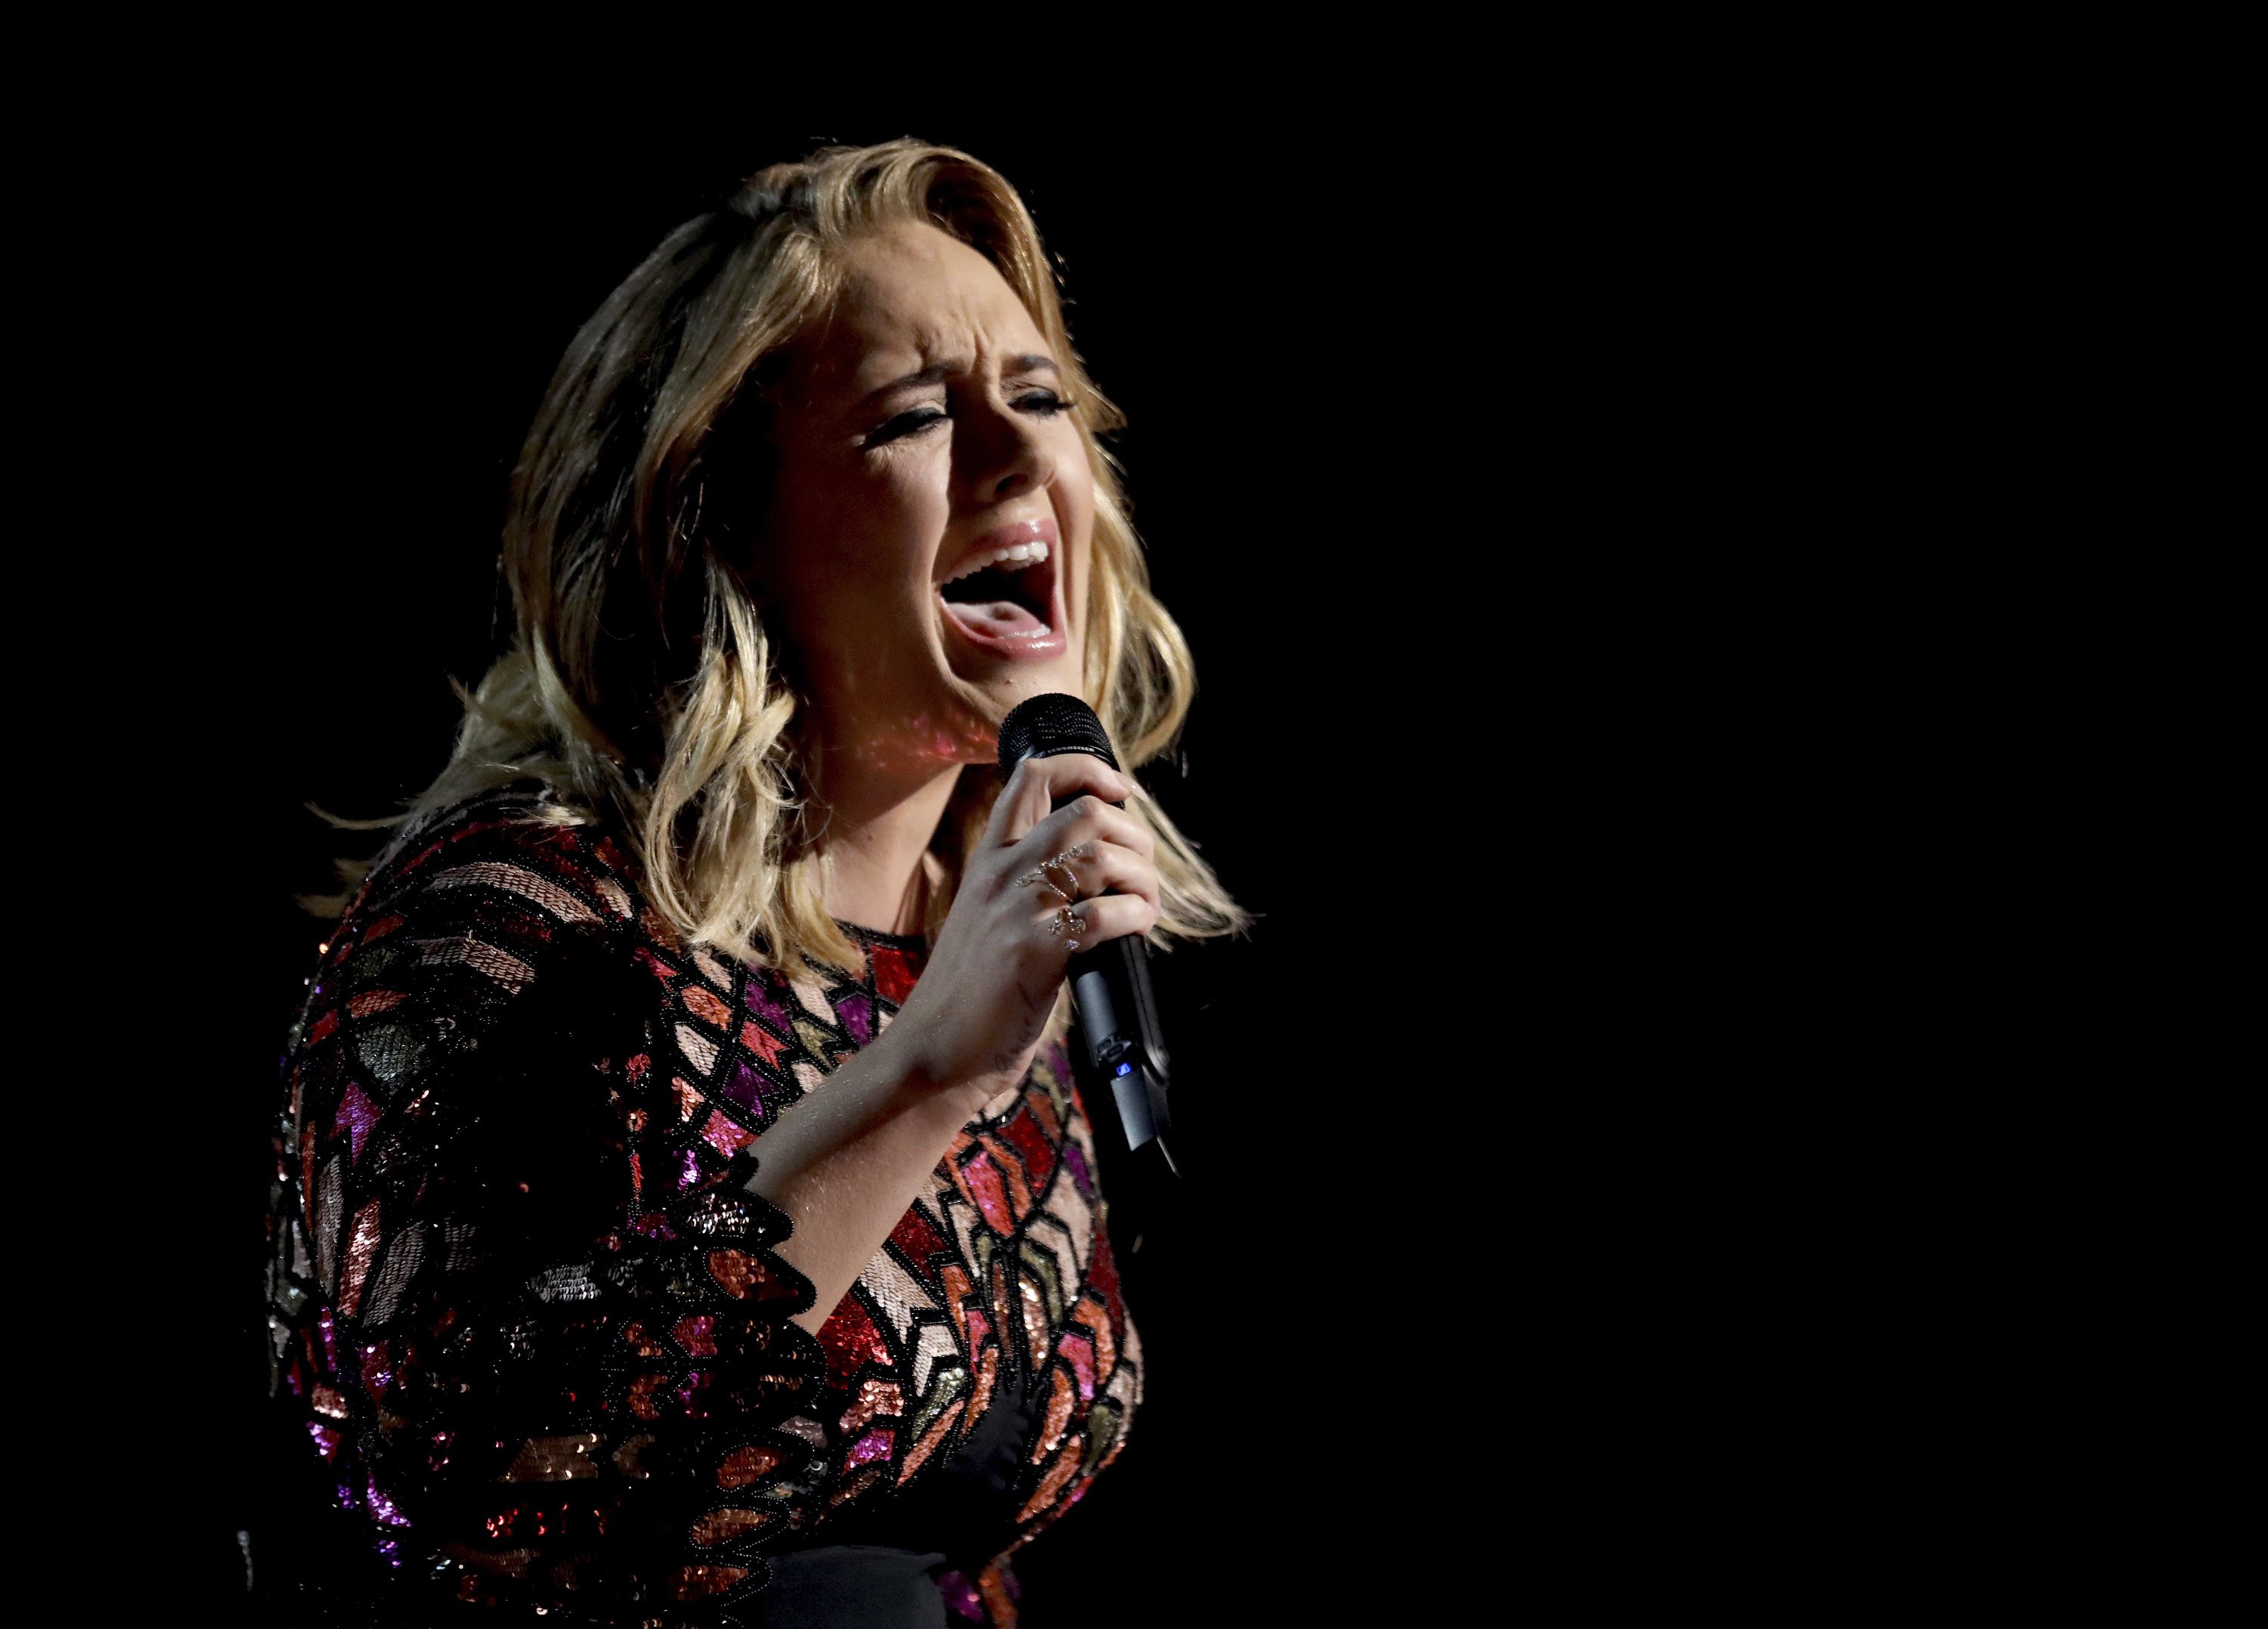 IRRECONEIXIBLE Adele deixa els fans atònits pel que s'ha fet: "Déu meu..."